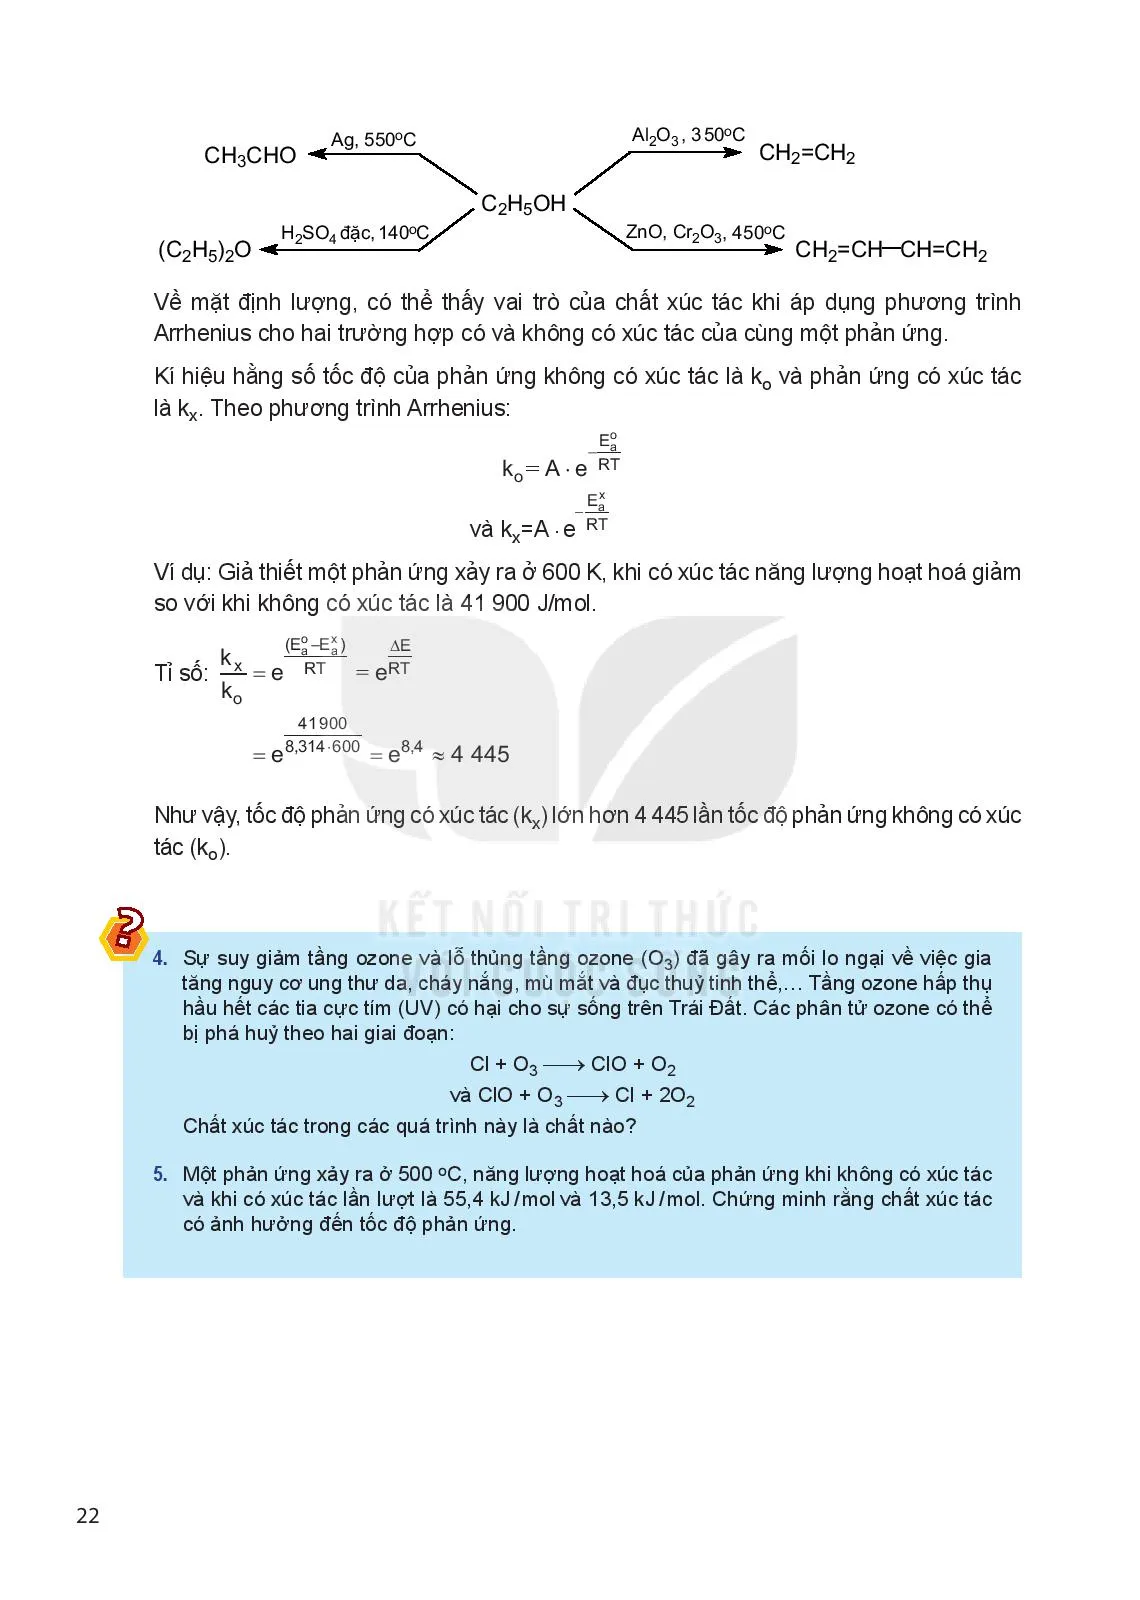 Bài 3. Năng lượng hoạt hoá của phản ứng hoá học